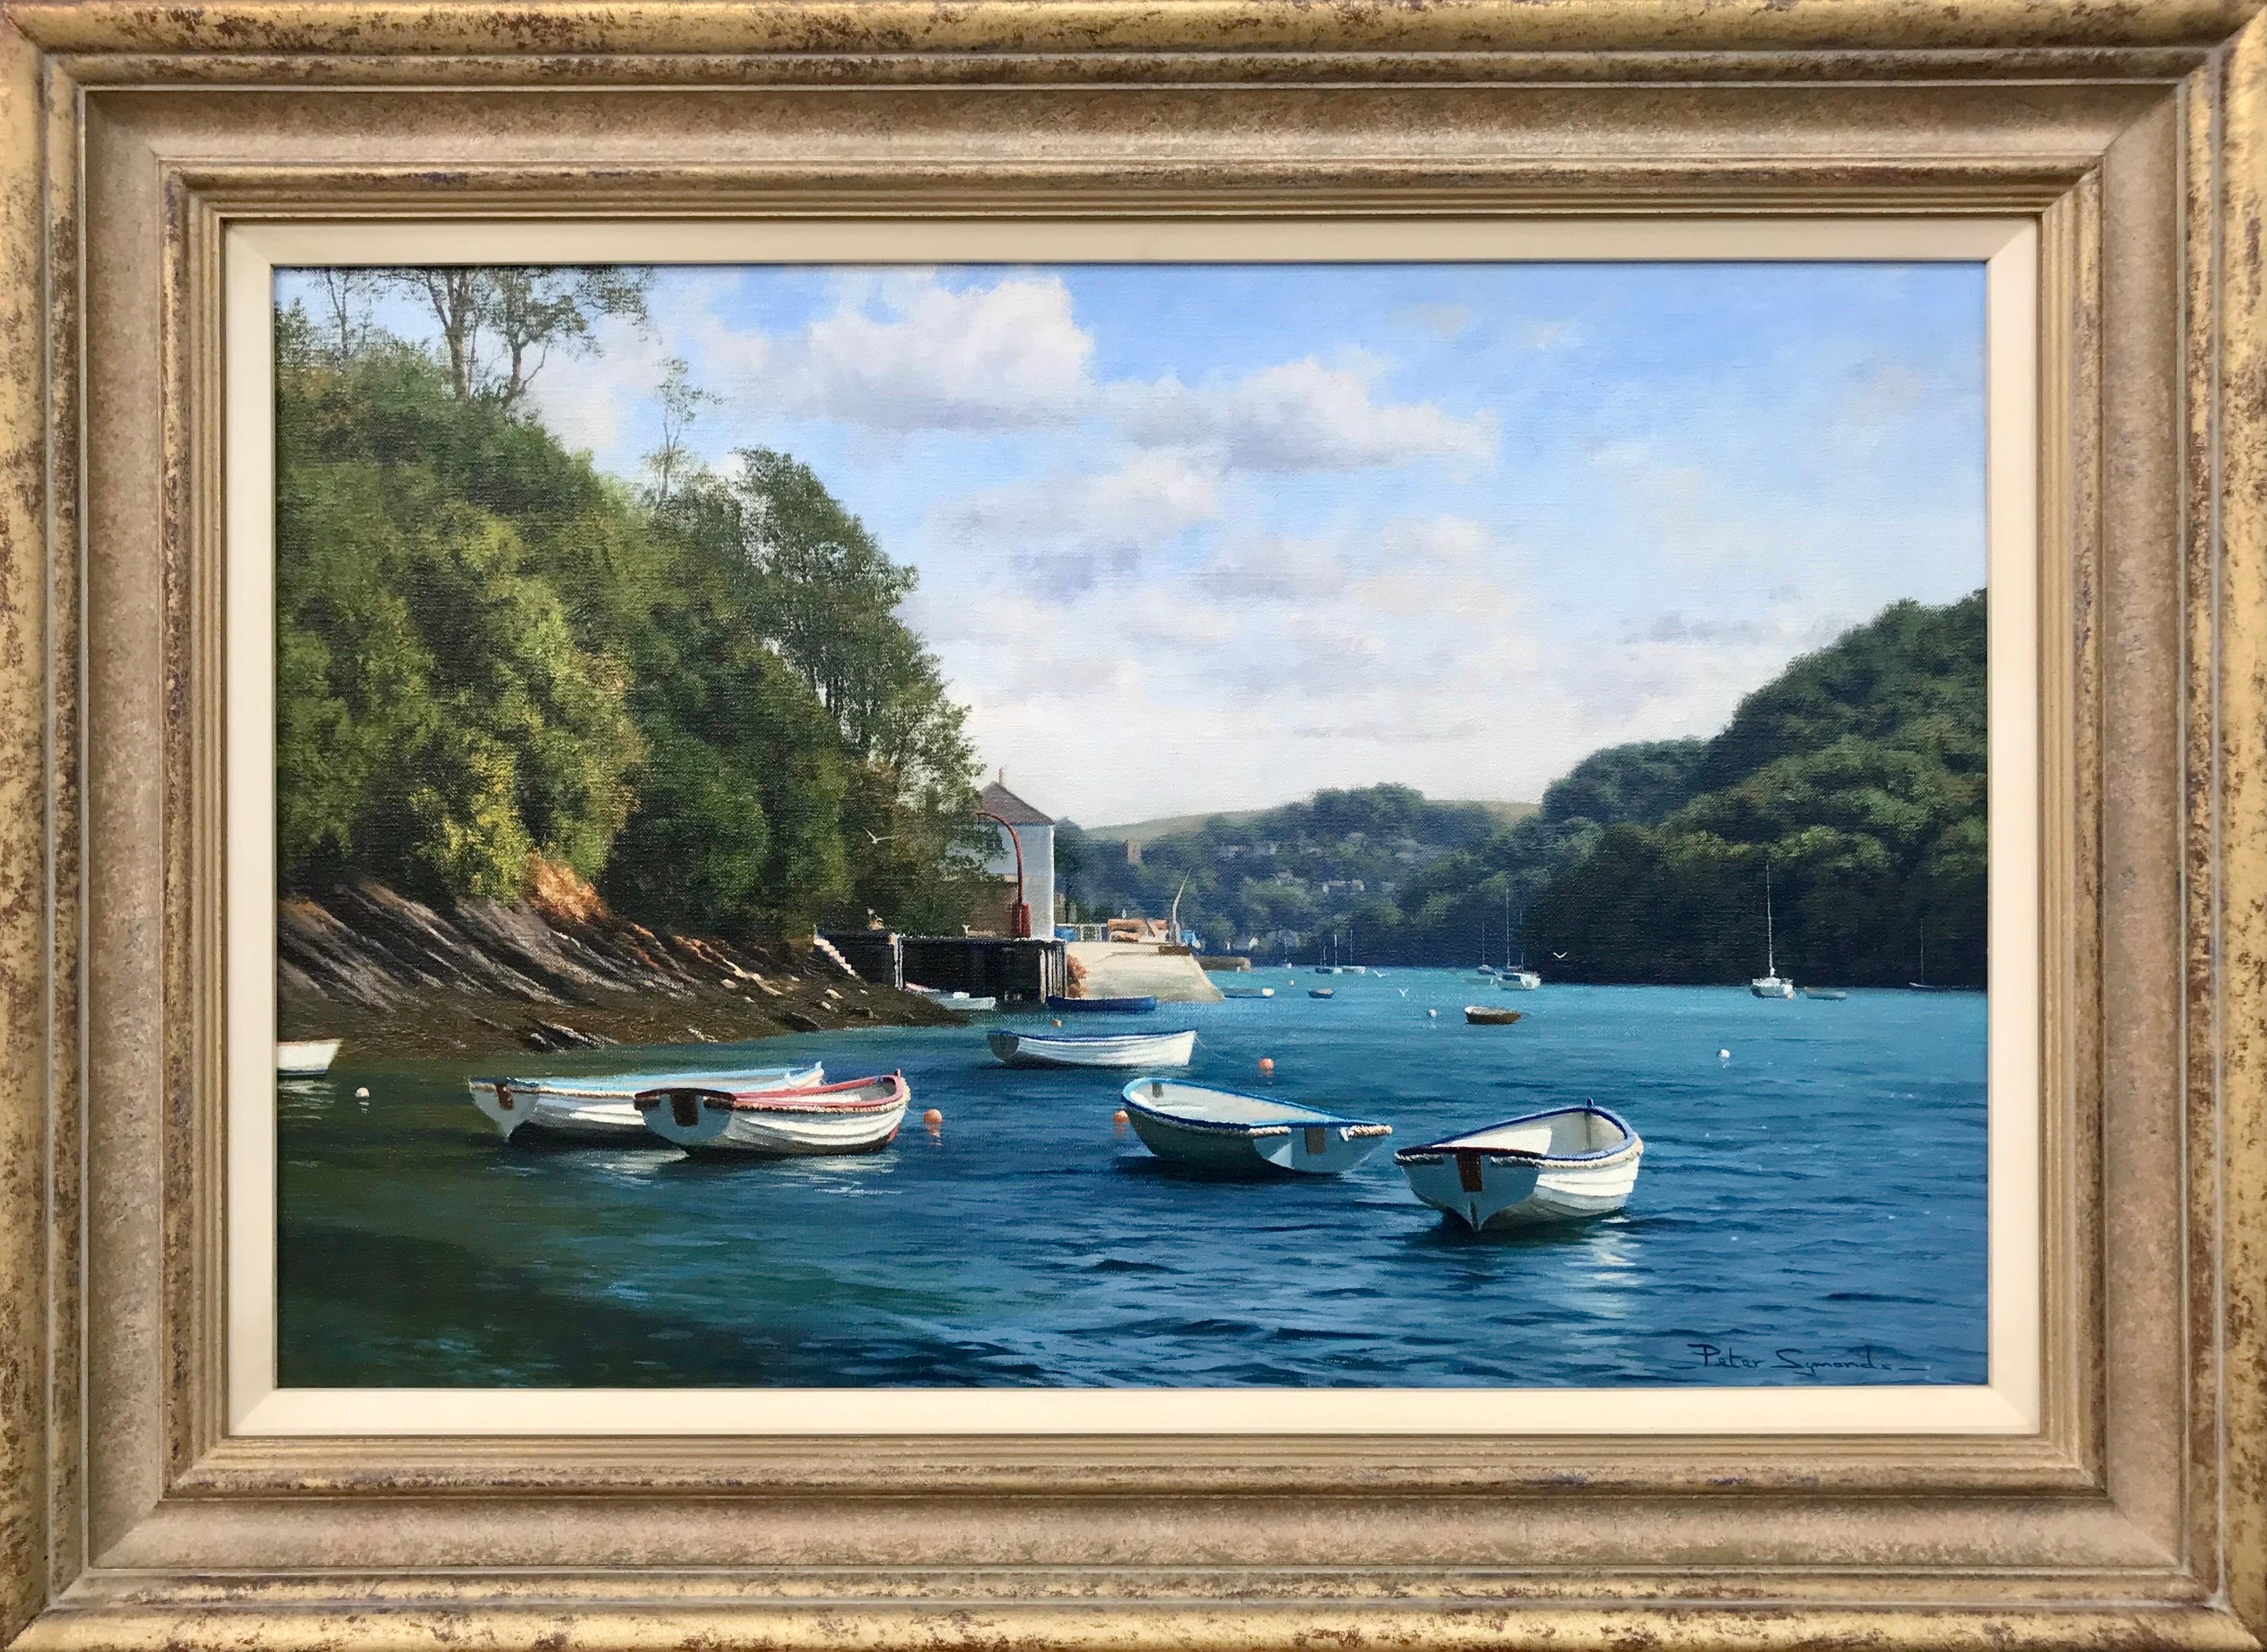 Peter Symonds Landscape Painting – Ölgemälde von Booten auf dem Fluss Yealm Devon, England, von britischem Landschaftsmaler